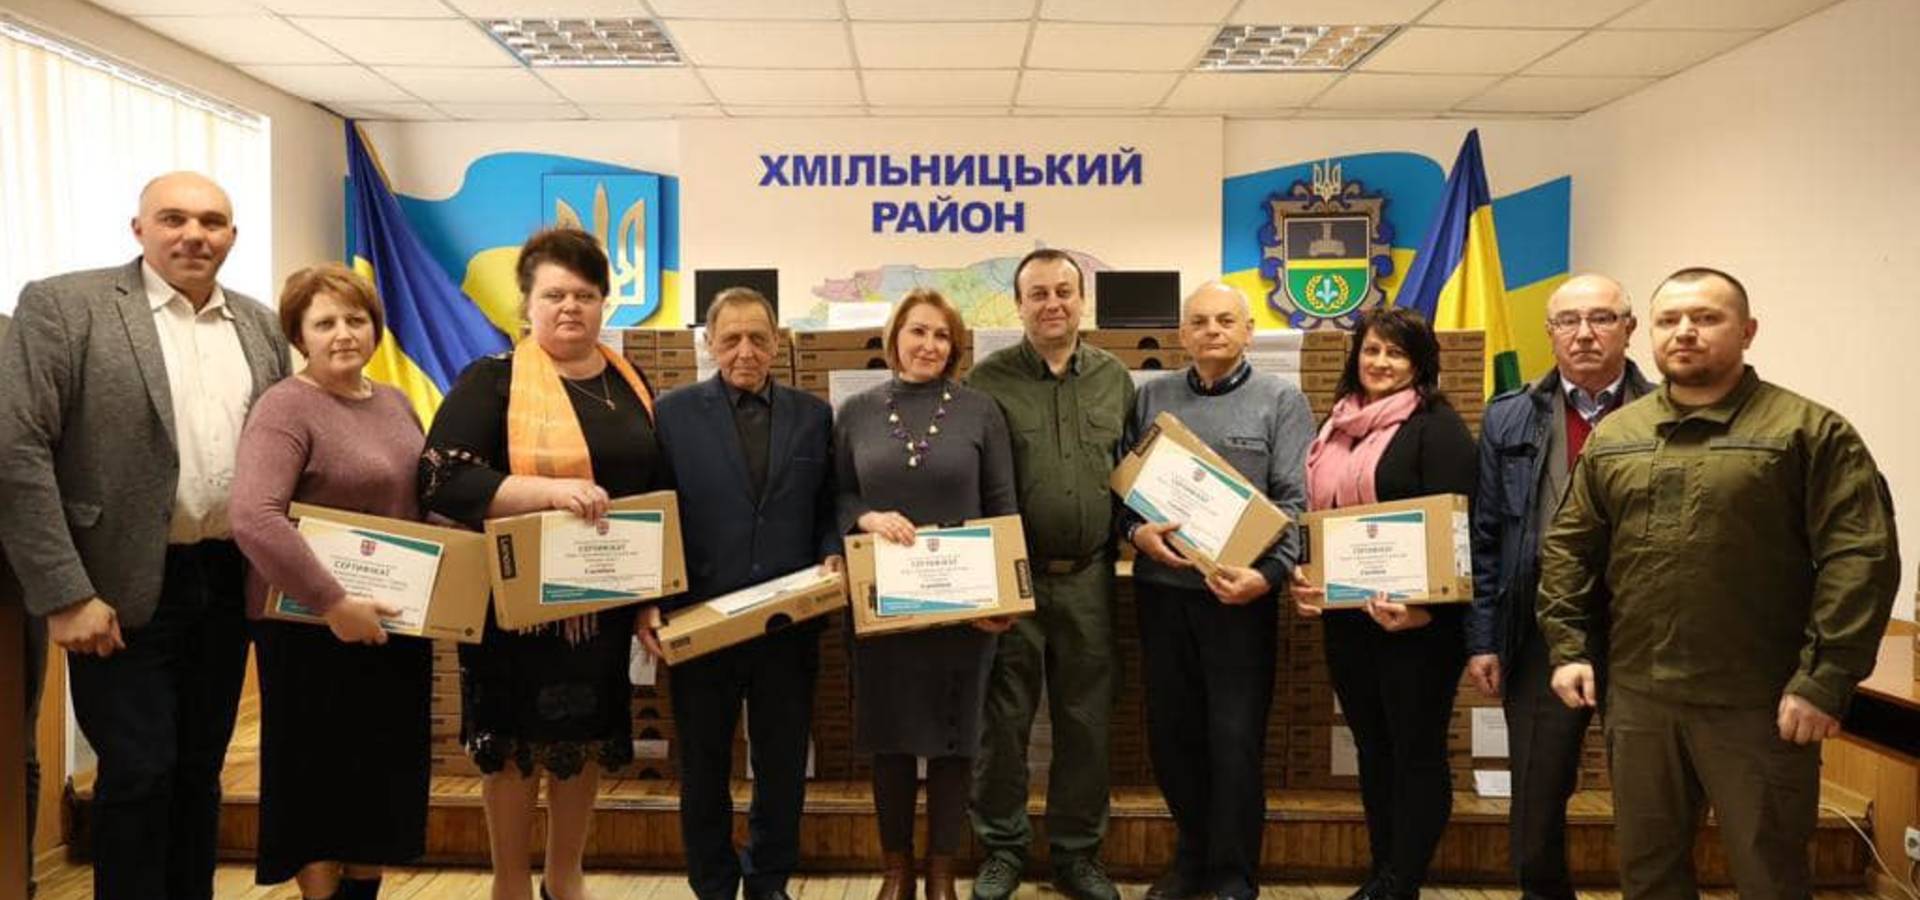 226 хромбуків отримали освітяни Хмільницького району в рамках проєкту "Ноутбук кожному вчителю"